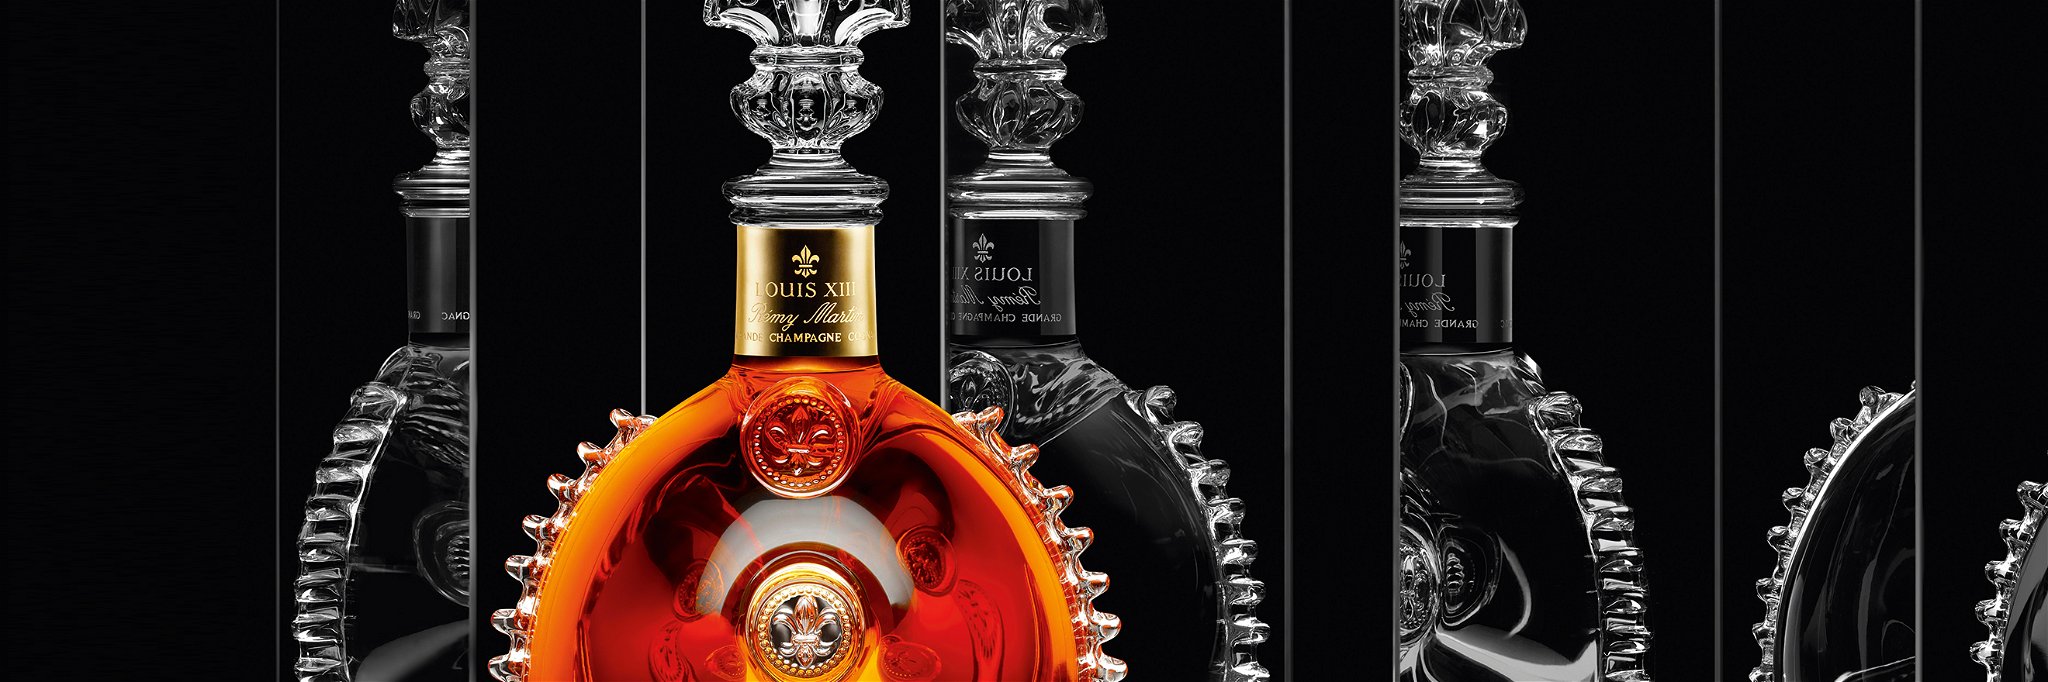 Der berühmteste Prestige-Cognac Frankreichs: Mit dem »Louis XIII« hat Rémy Martin ein weltberühmtes Luxusprodukt auf den Markt gebracht.